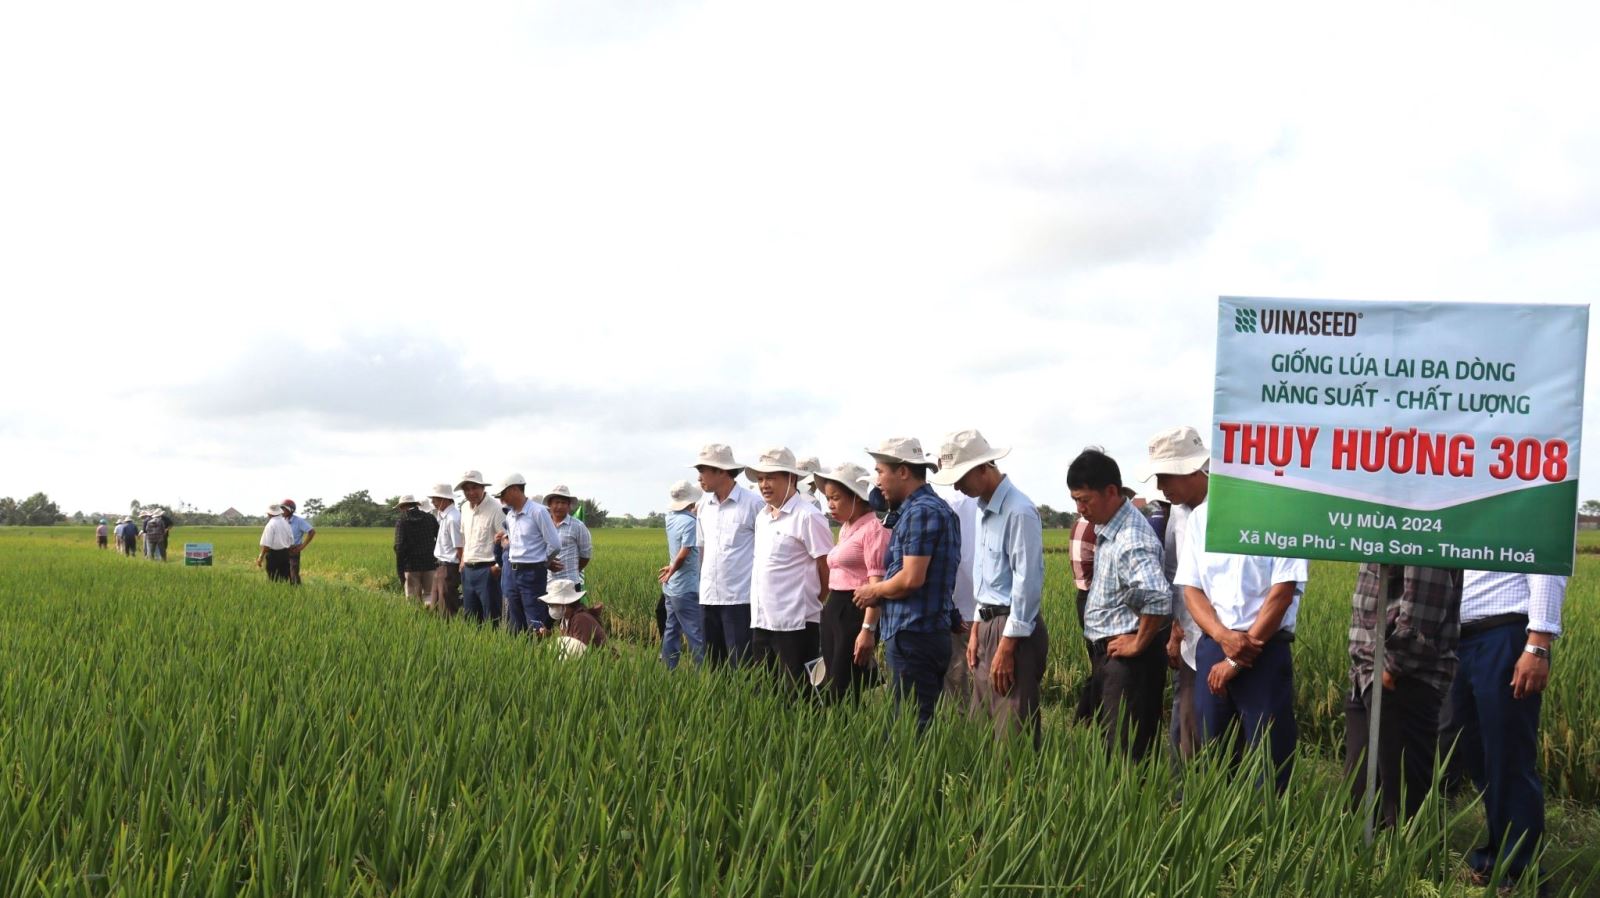 Ông Phạm Văn Thành, phó chủ tịch UBND huyện Nga Sơn cùng bà con nông dân đi tham quan mô hình liên kết 3 nhà.